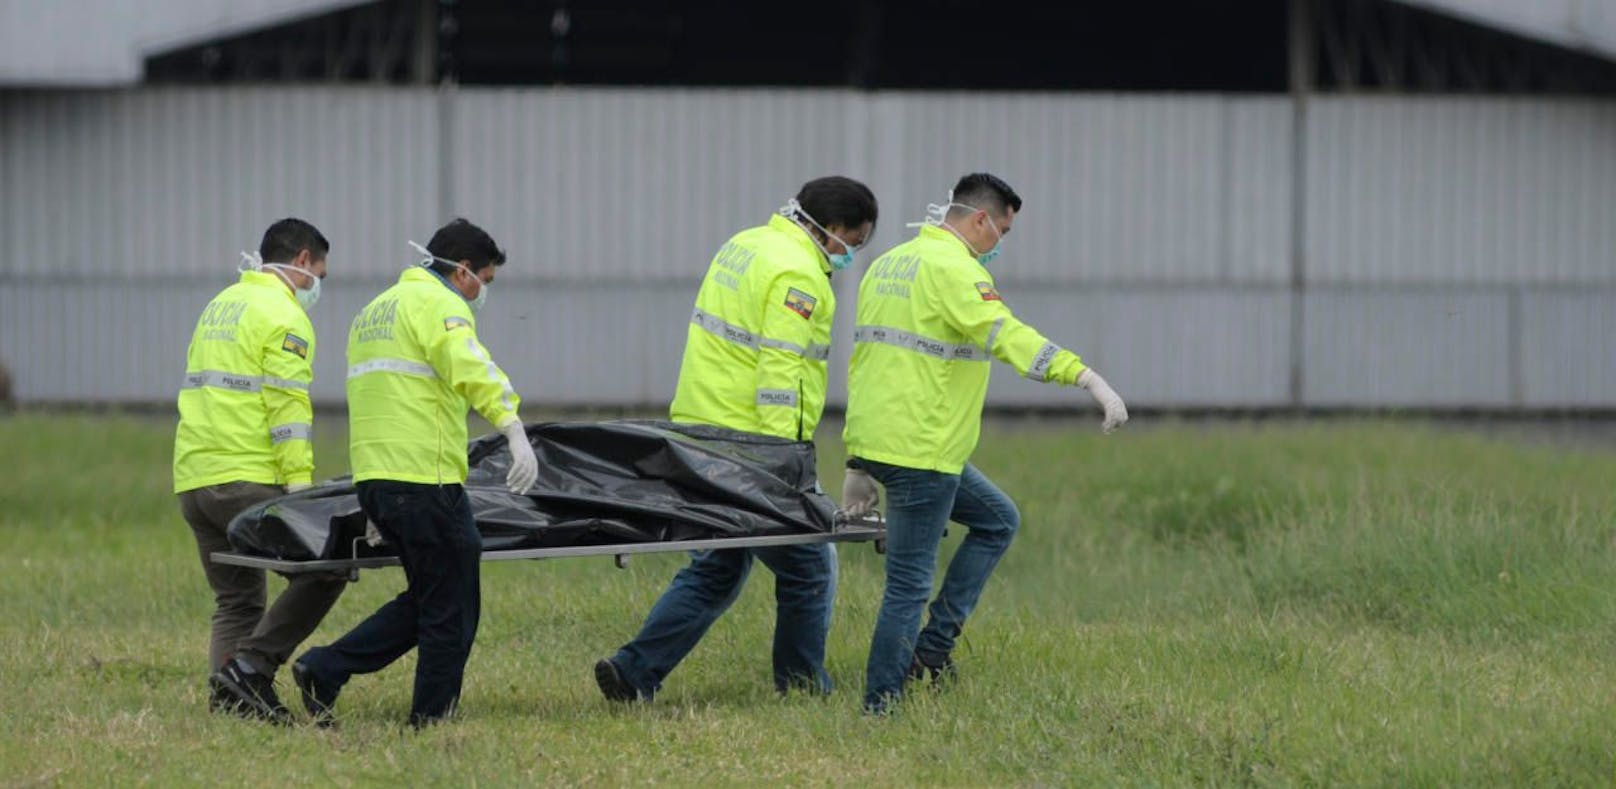 Die Männer haben versucht, nach New York zu kommen: Ein Opfer wird vom Flugfeld weggetragen.